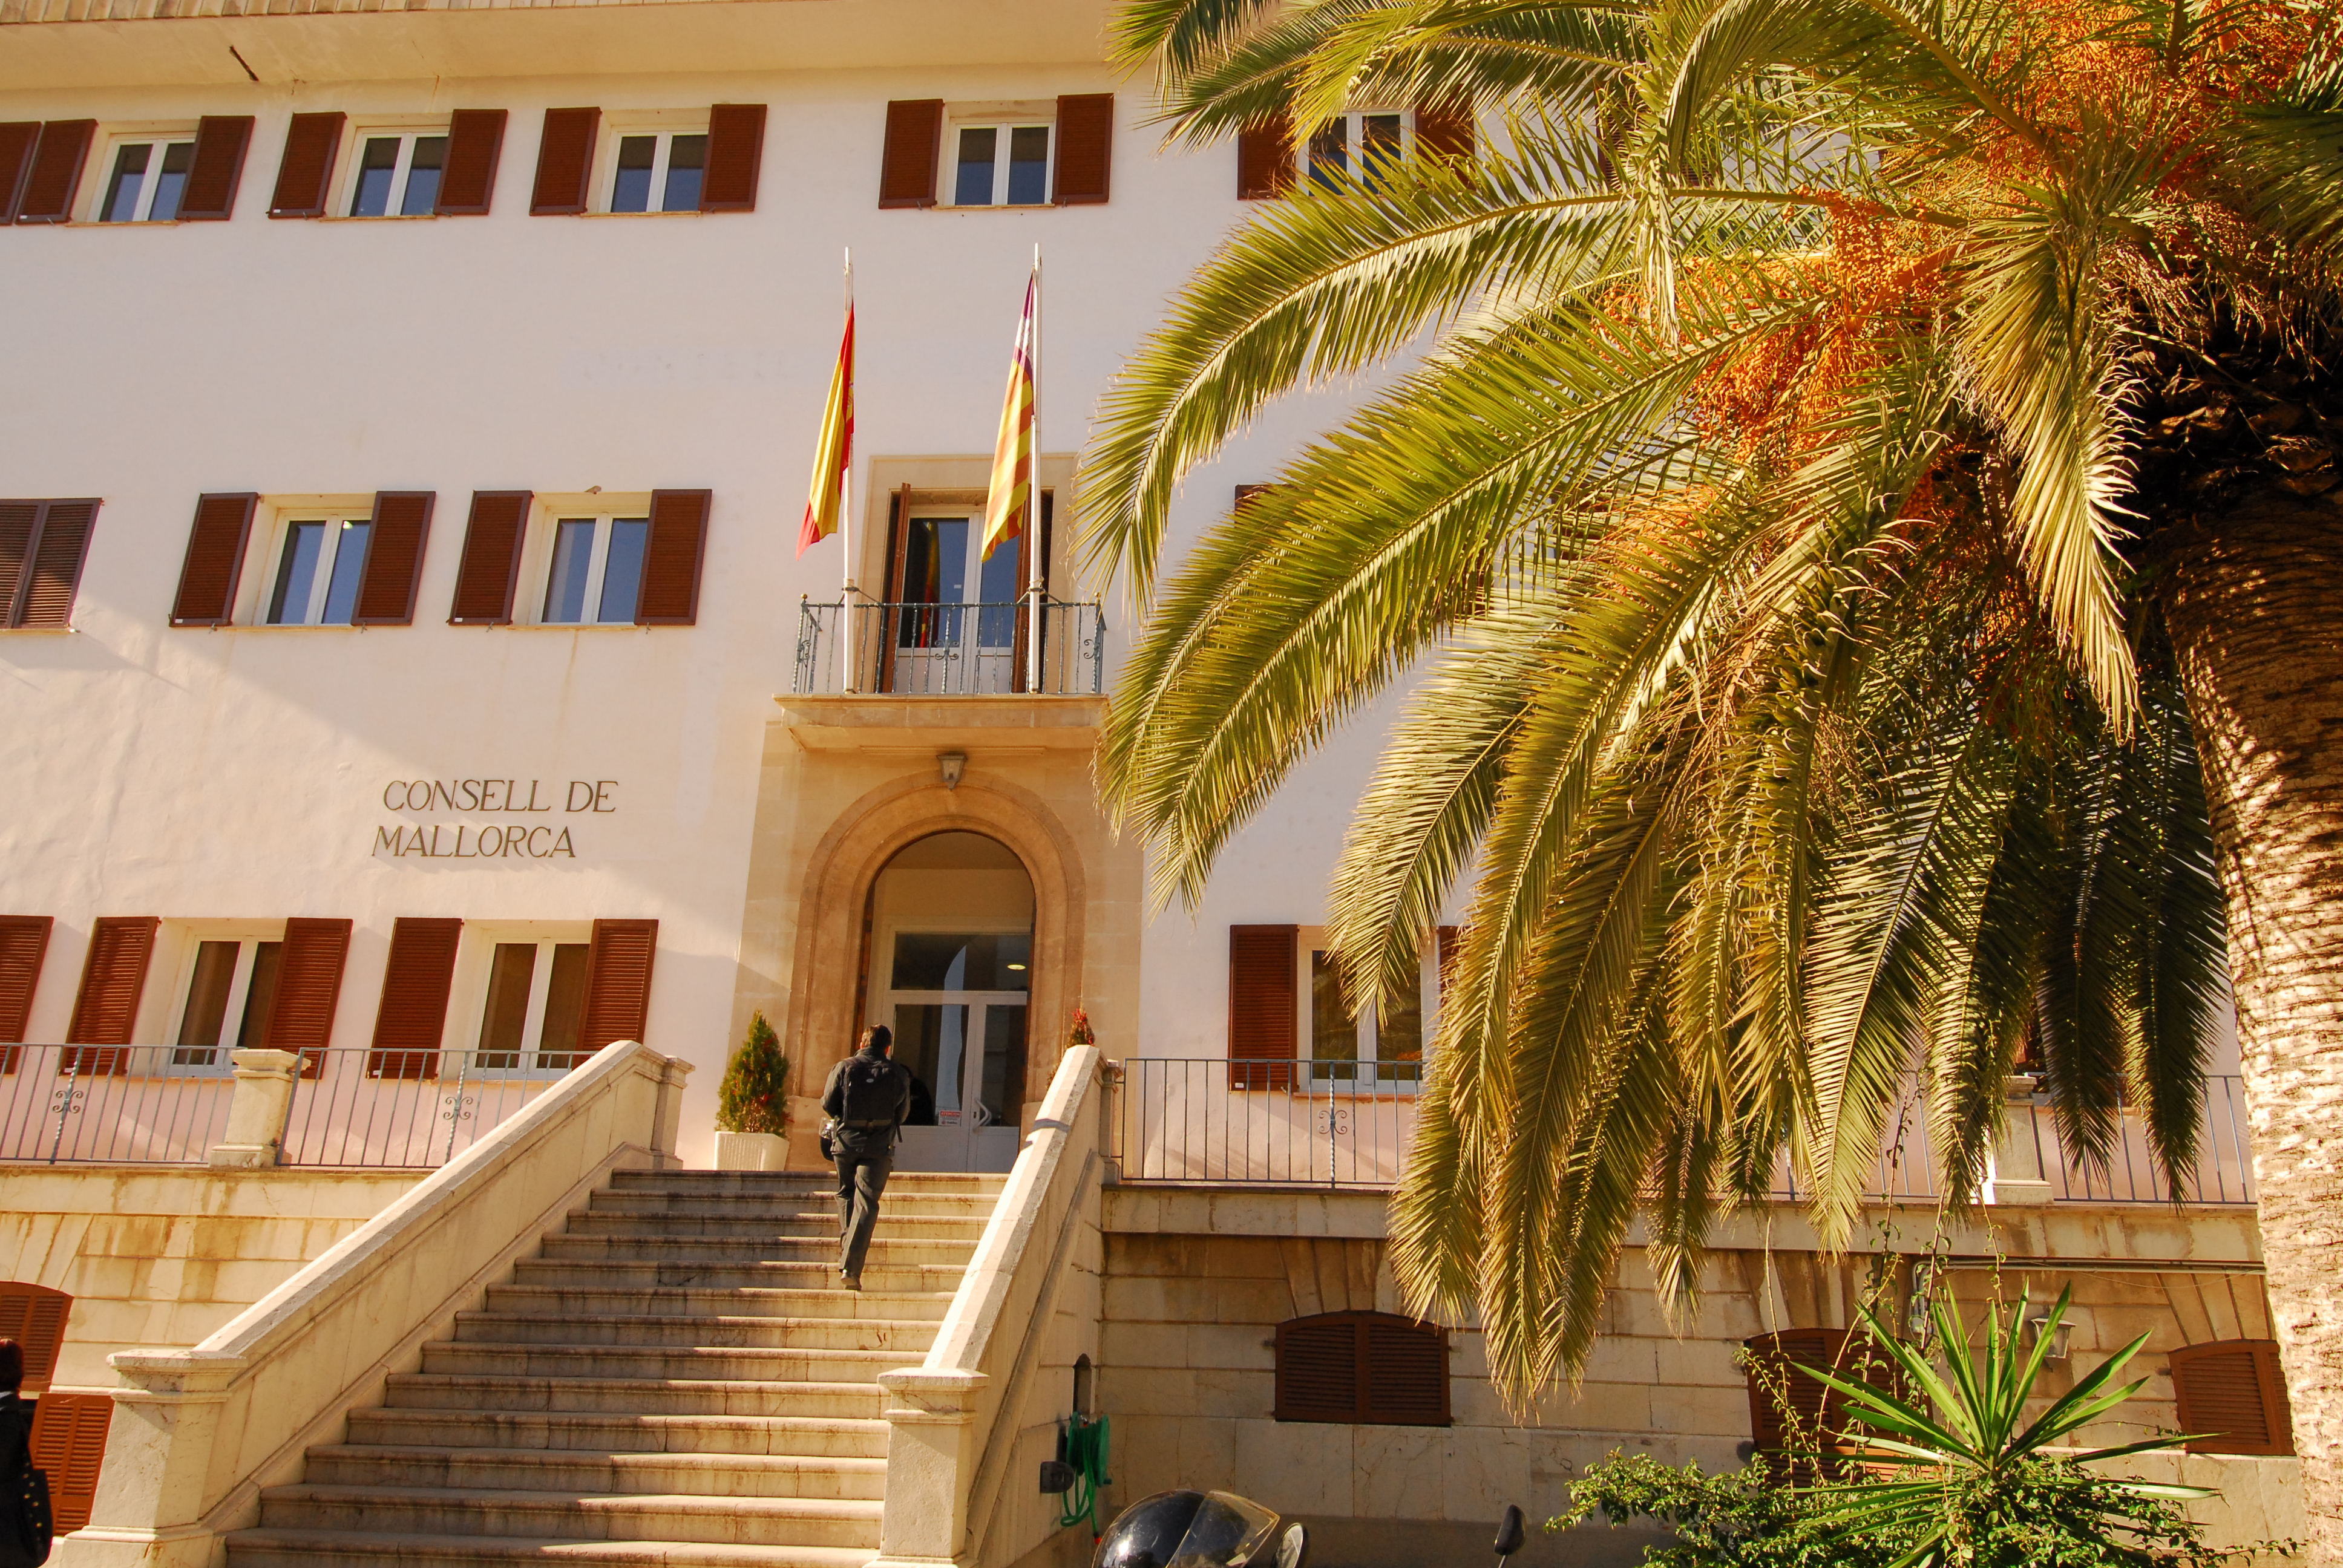 El Departamento de Drets Socials del Consell de Mallorca ha aumentado su presupuesto un 6,11% hasta alcanzar los más de 211,5 millones de euros